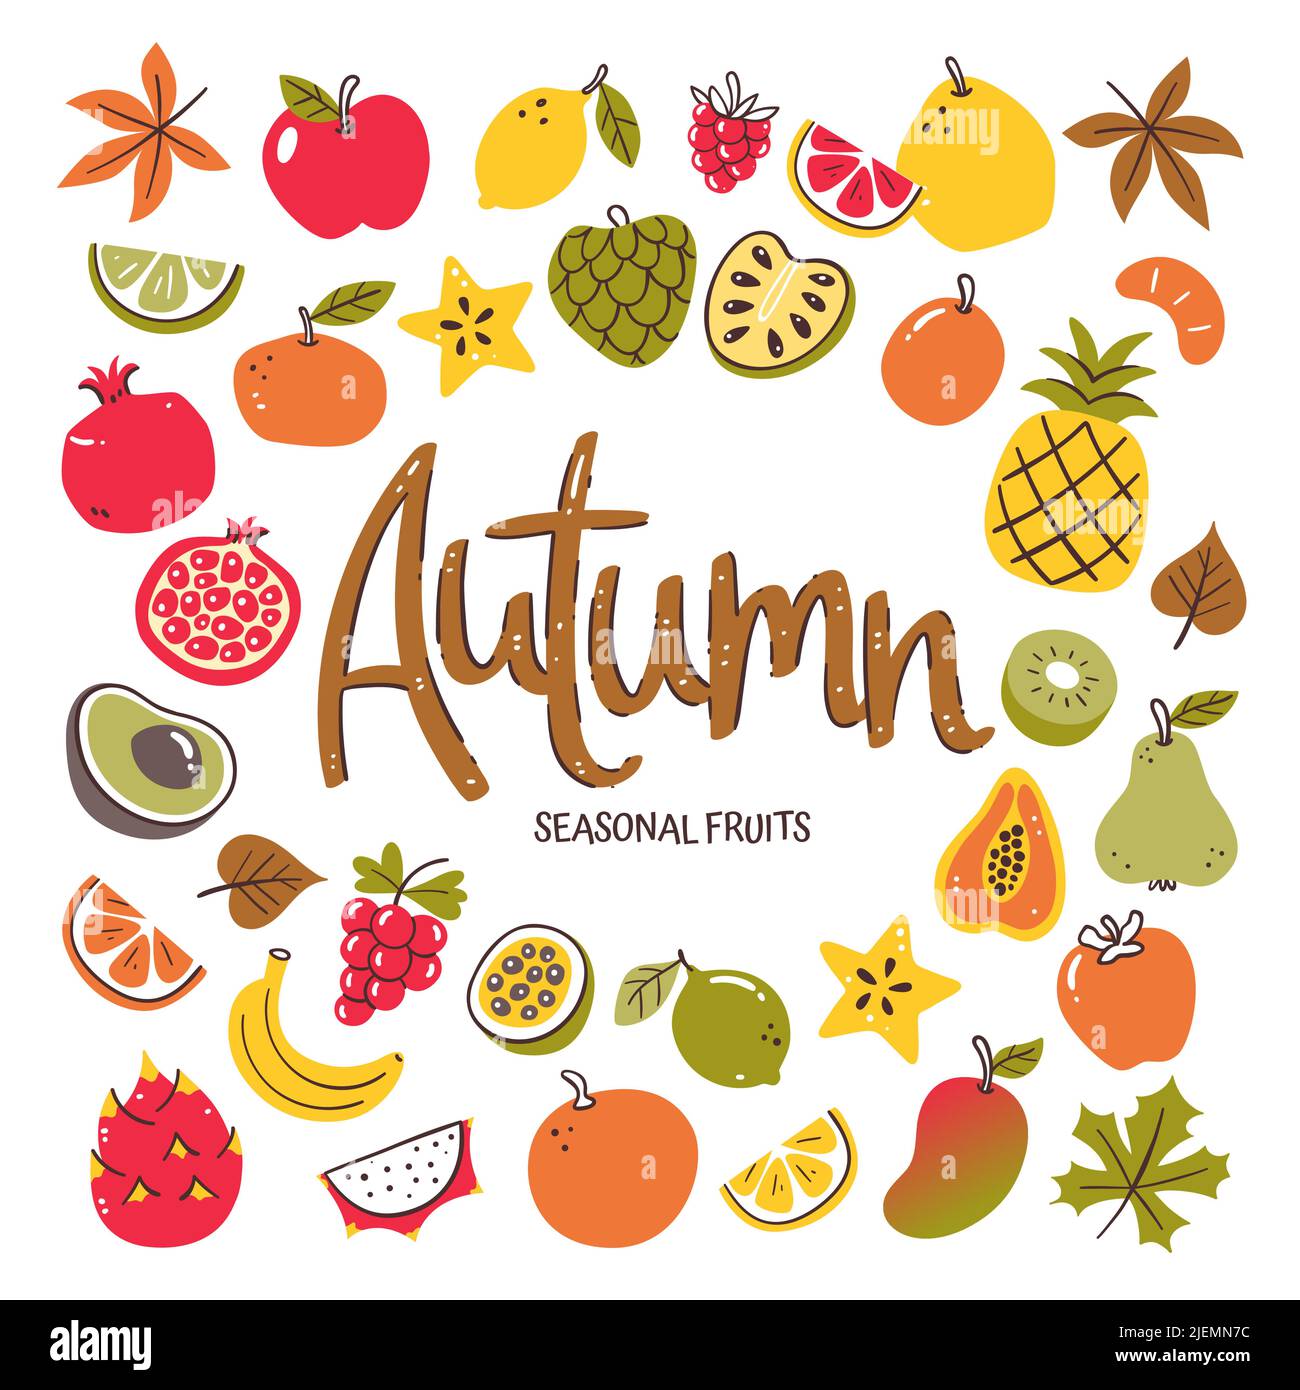 Saisonale Früchte Hintergrund. Herbstfrucht Komposition aus bunten handgezeichneten Vektor-Icons, isoliert auf weißem Hintergrund. Stock Vektor